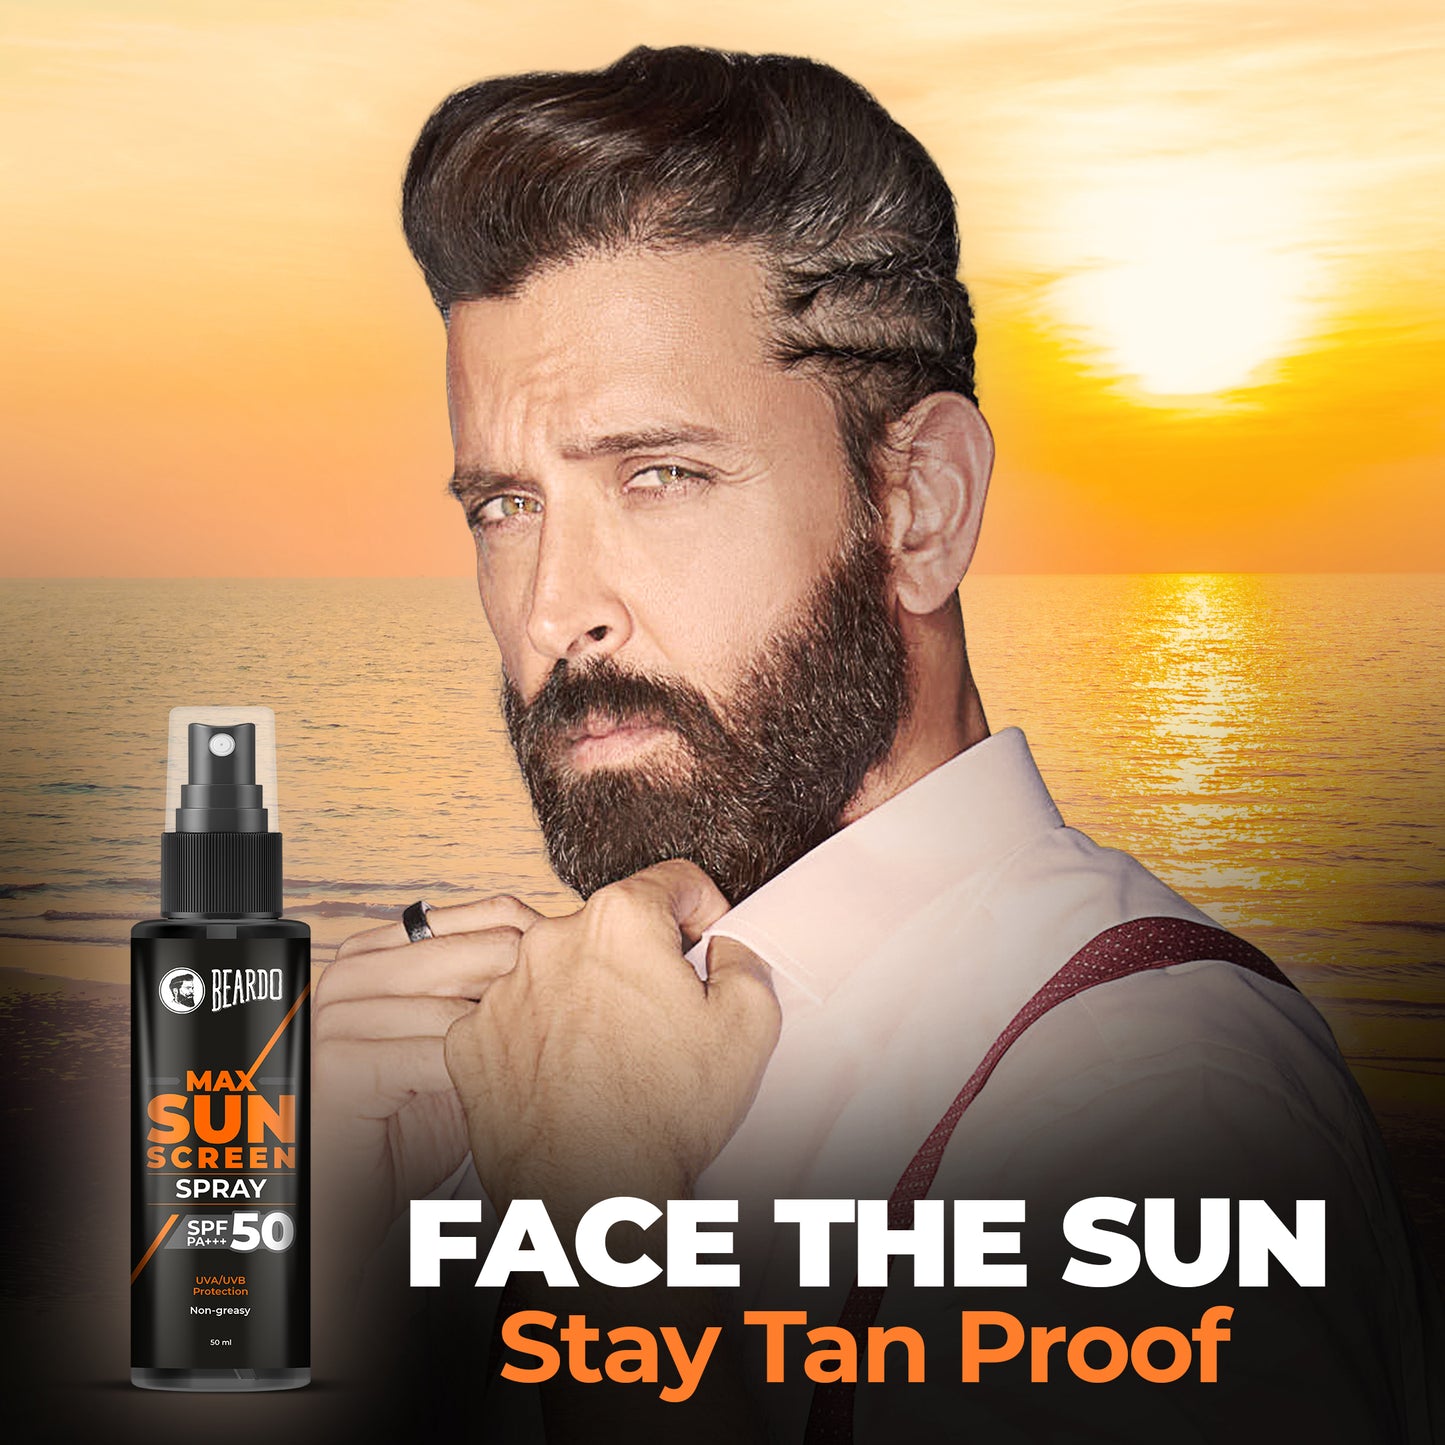 sun protection cream for men's face, sunscreen cream for men's face, best sunscreen cream for men, sun screen cream for men